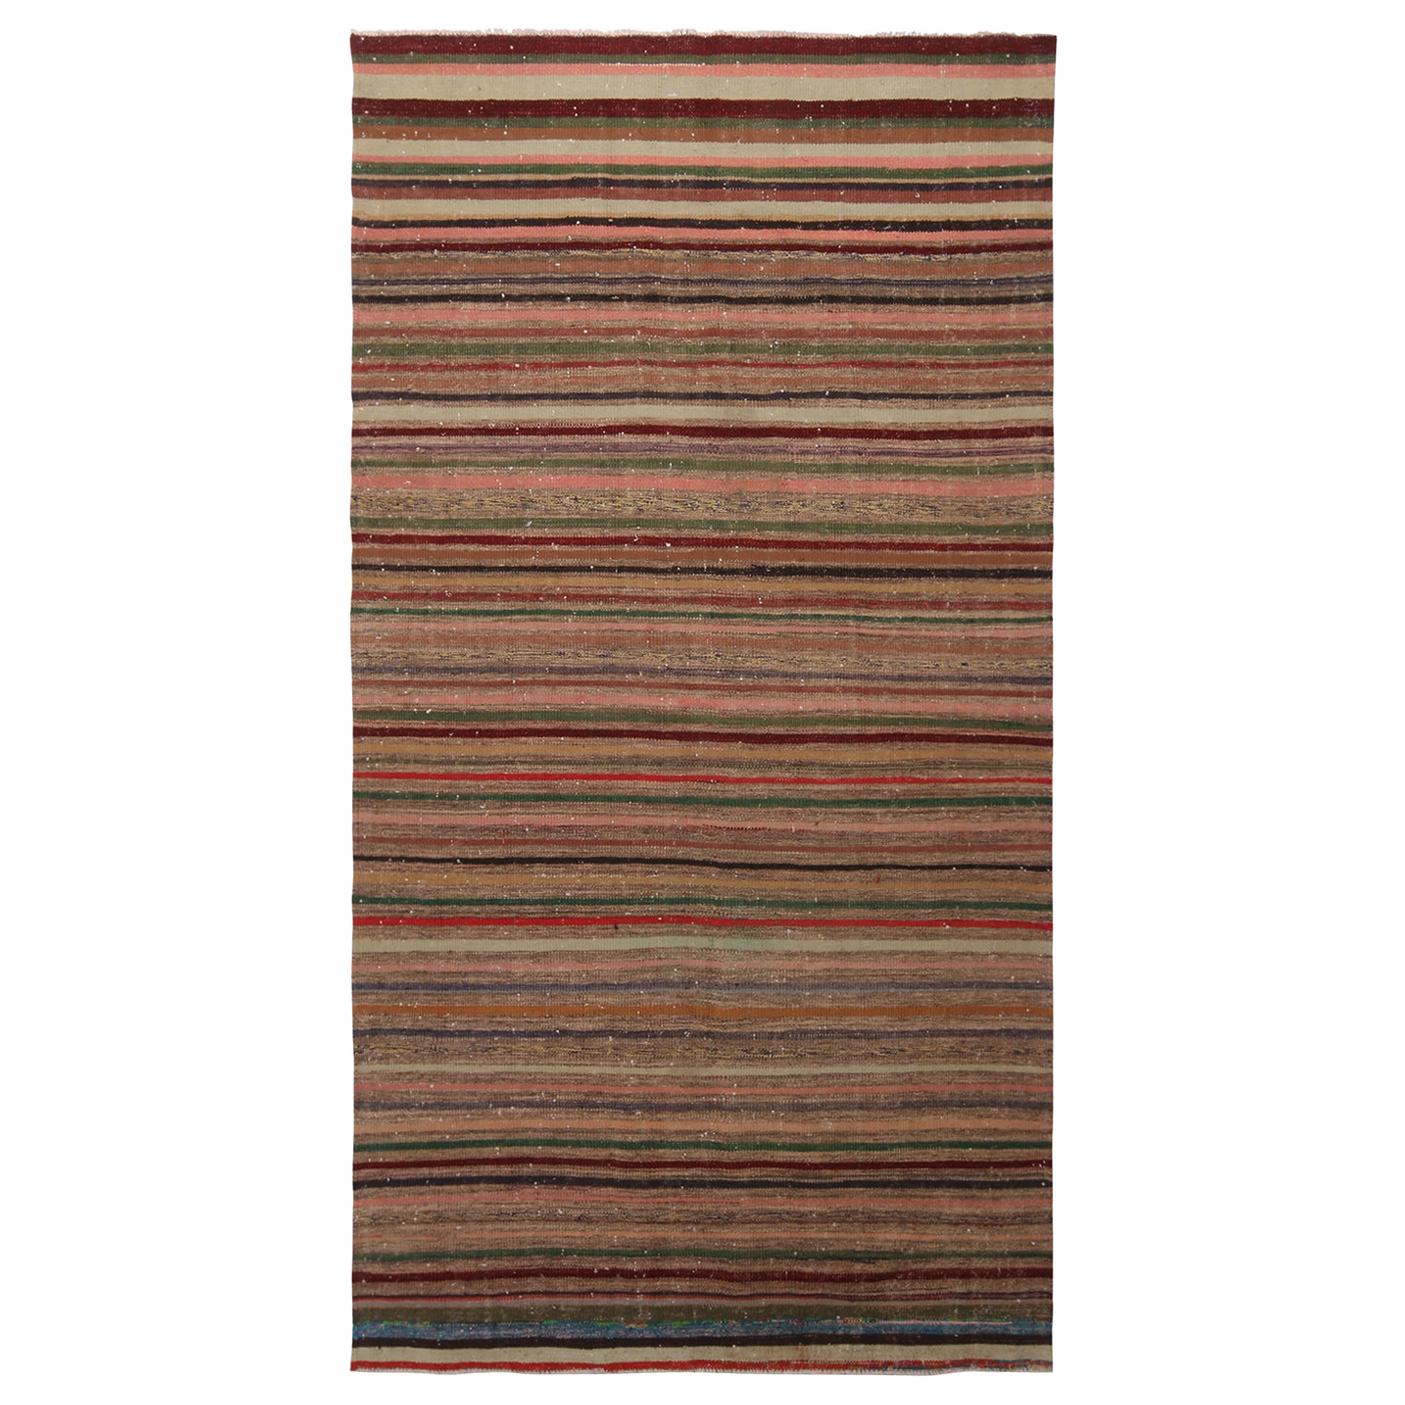 Vintage Striped Beige Brown and Multi-Color Wool Kilim Rug by Rug & Kilim